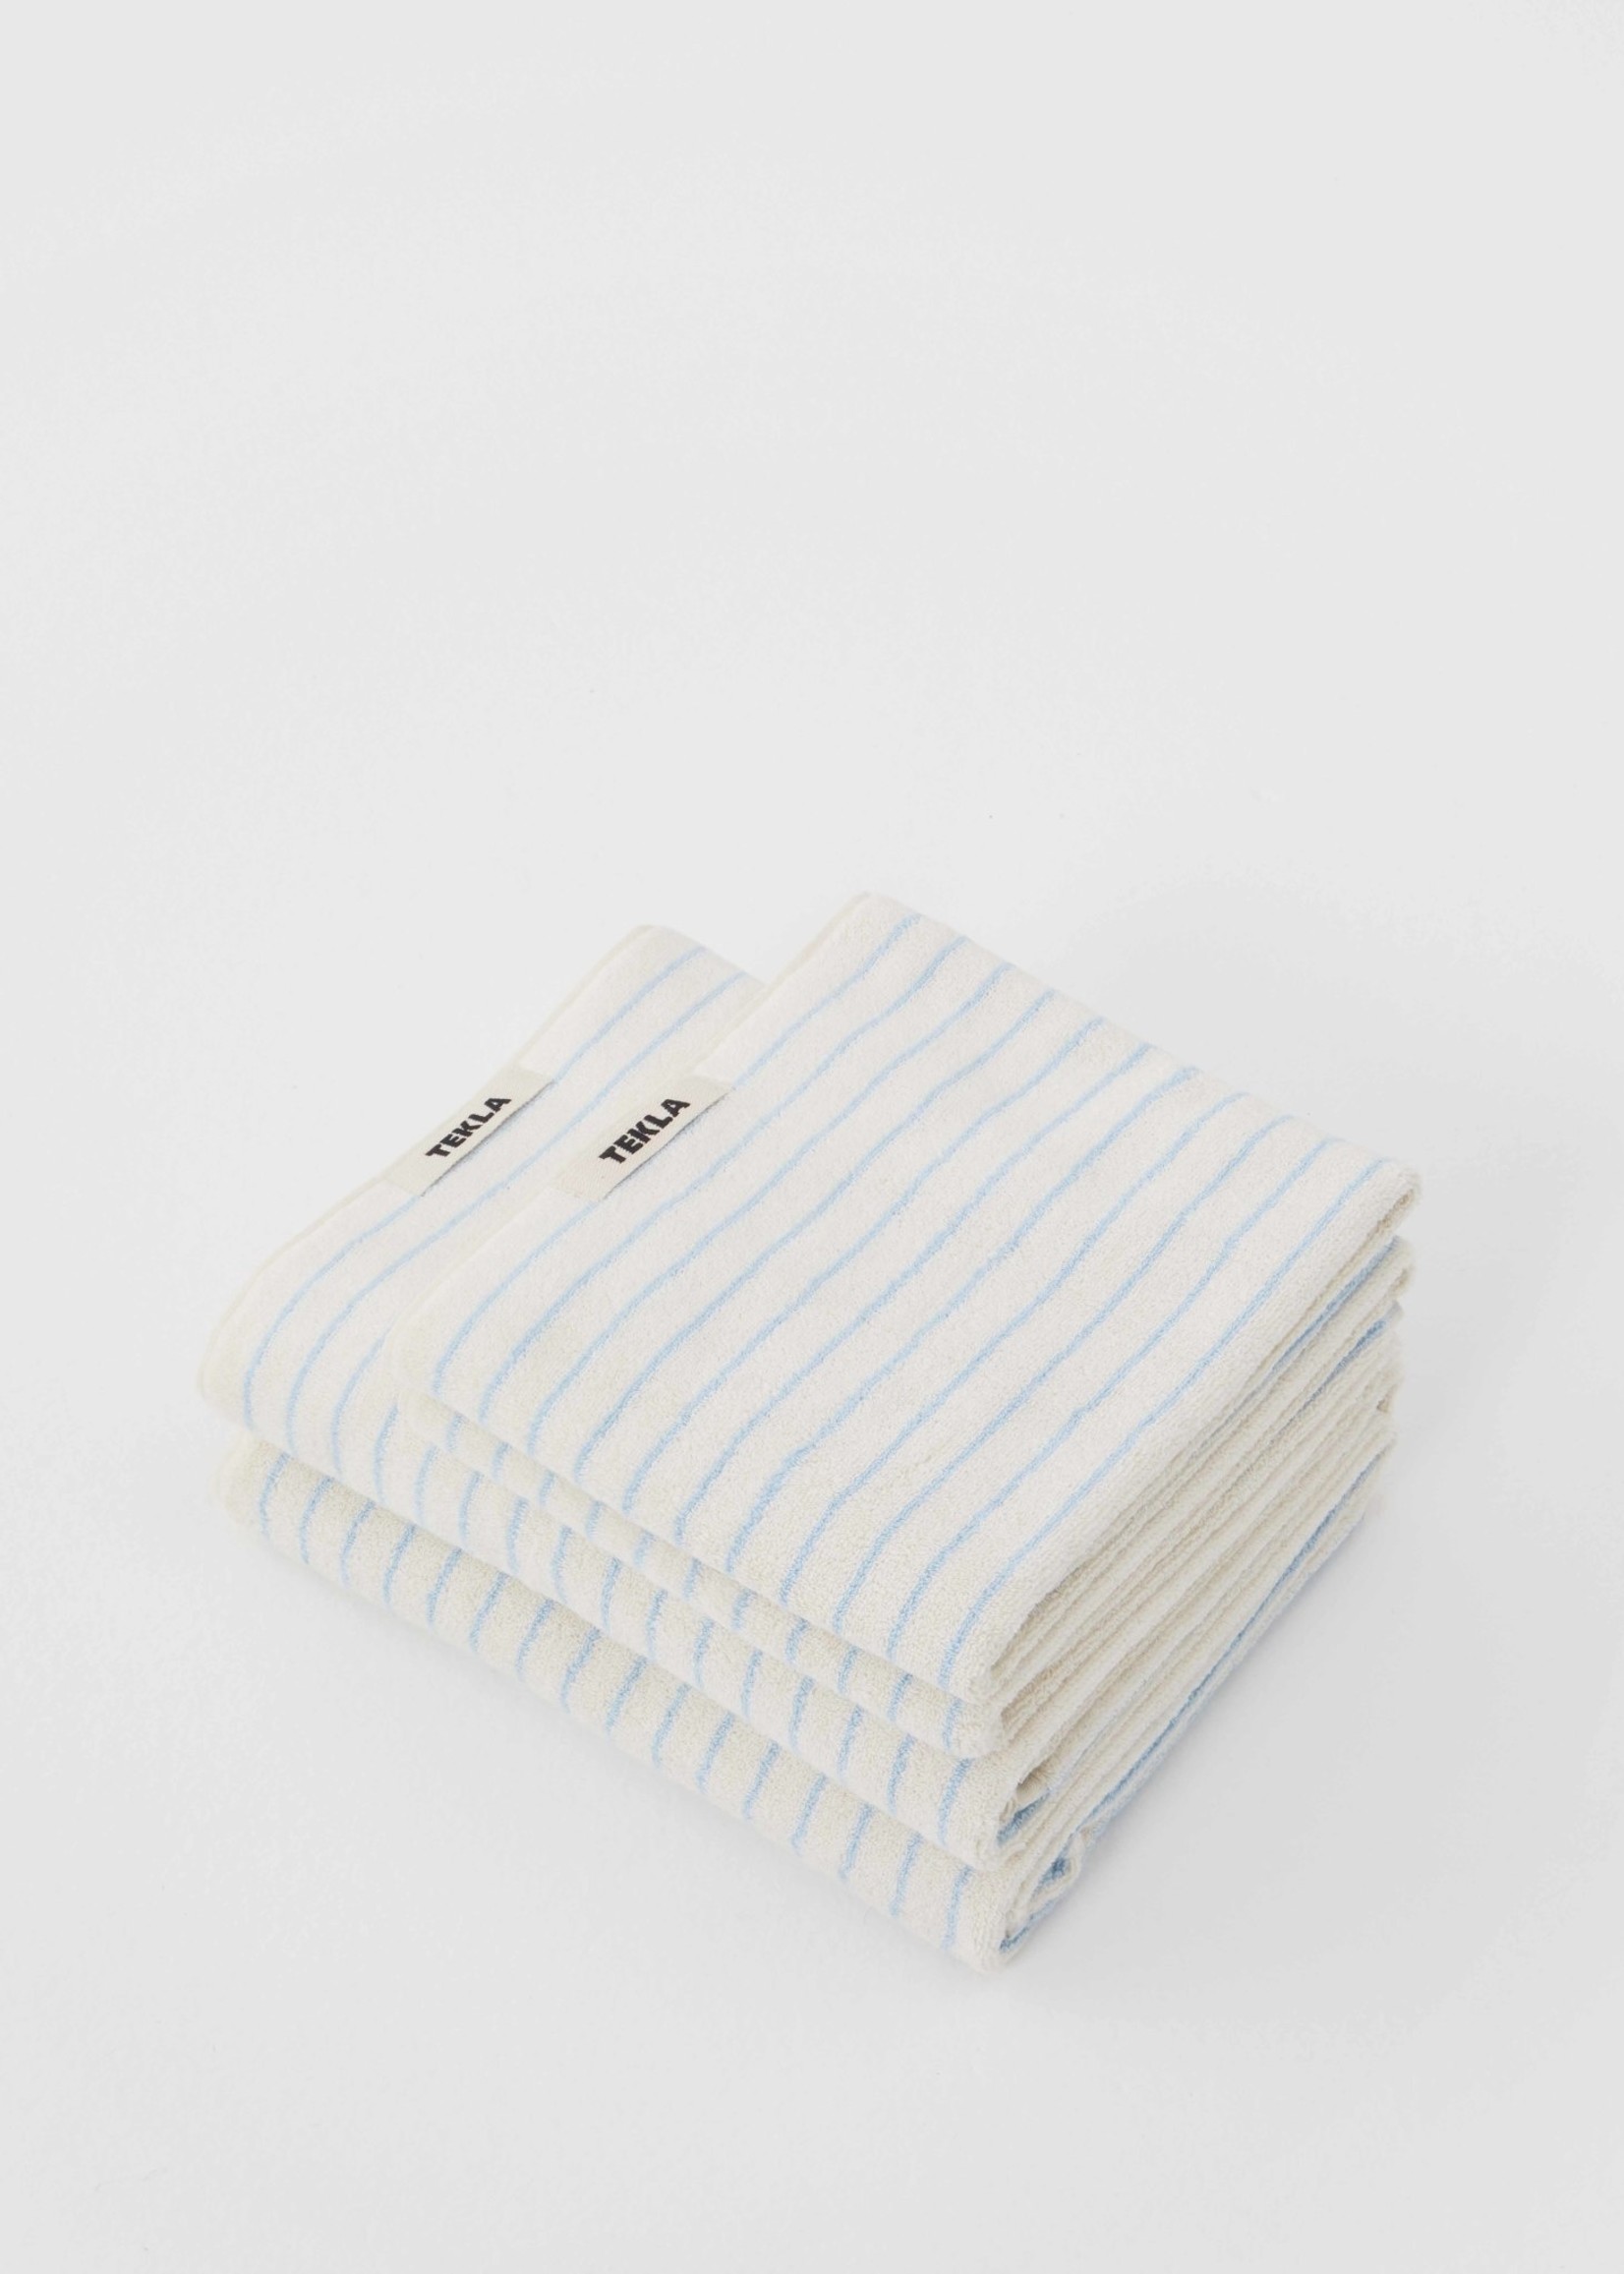 TEKLA TEKLA Organic Bath Towel in Baby Blue Stripe